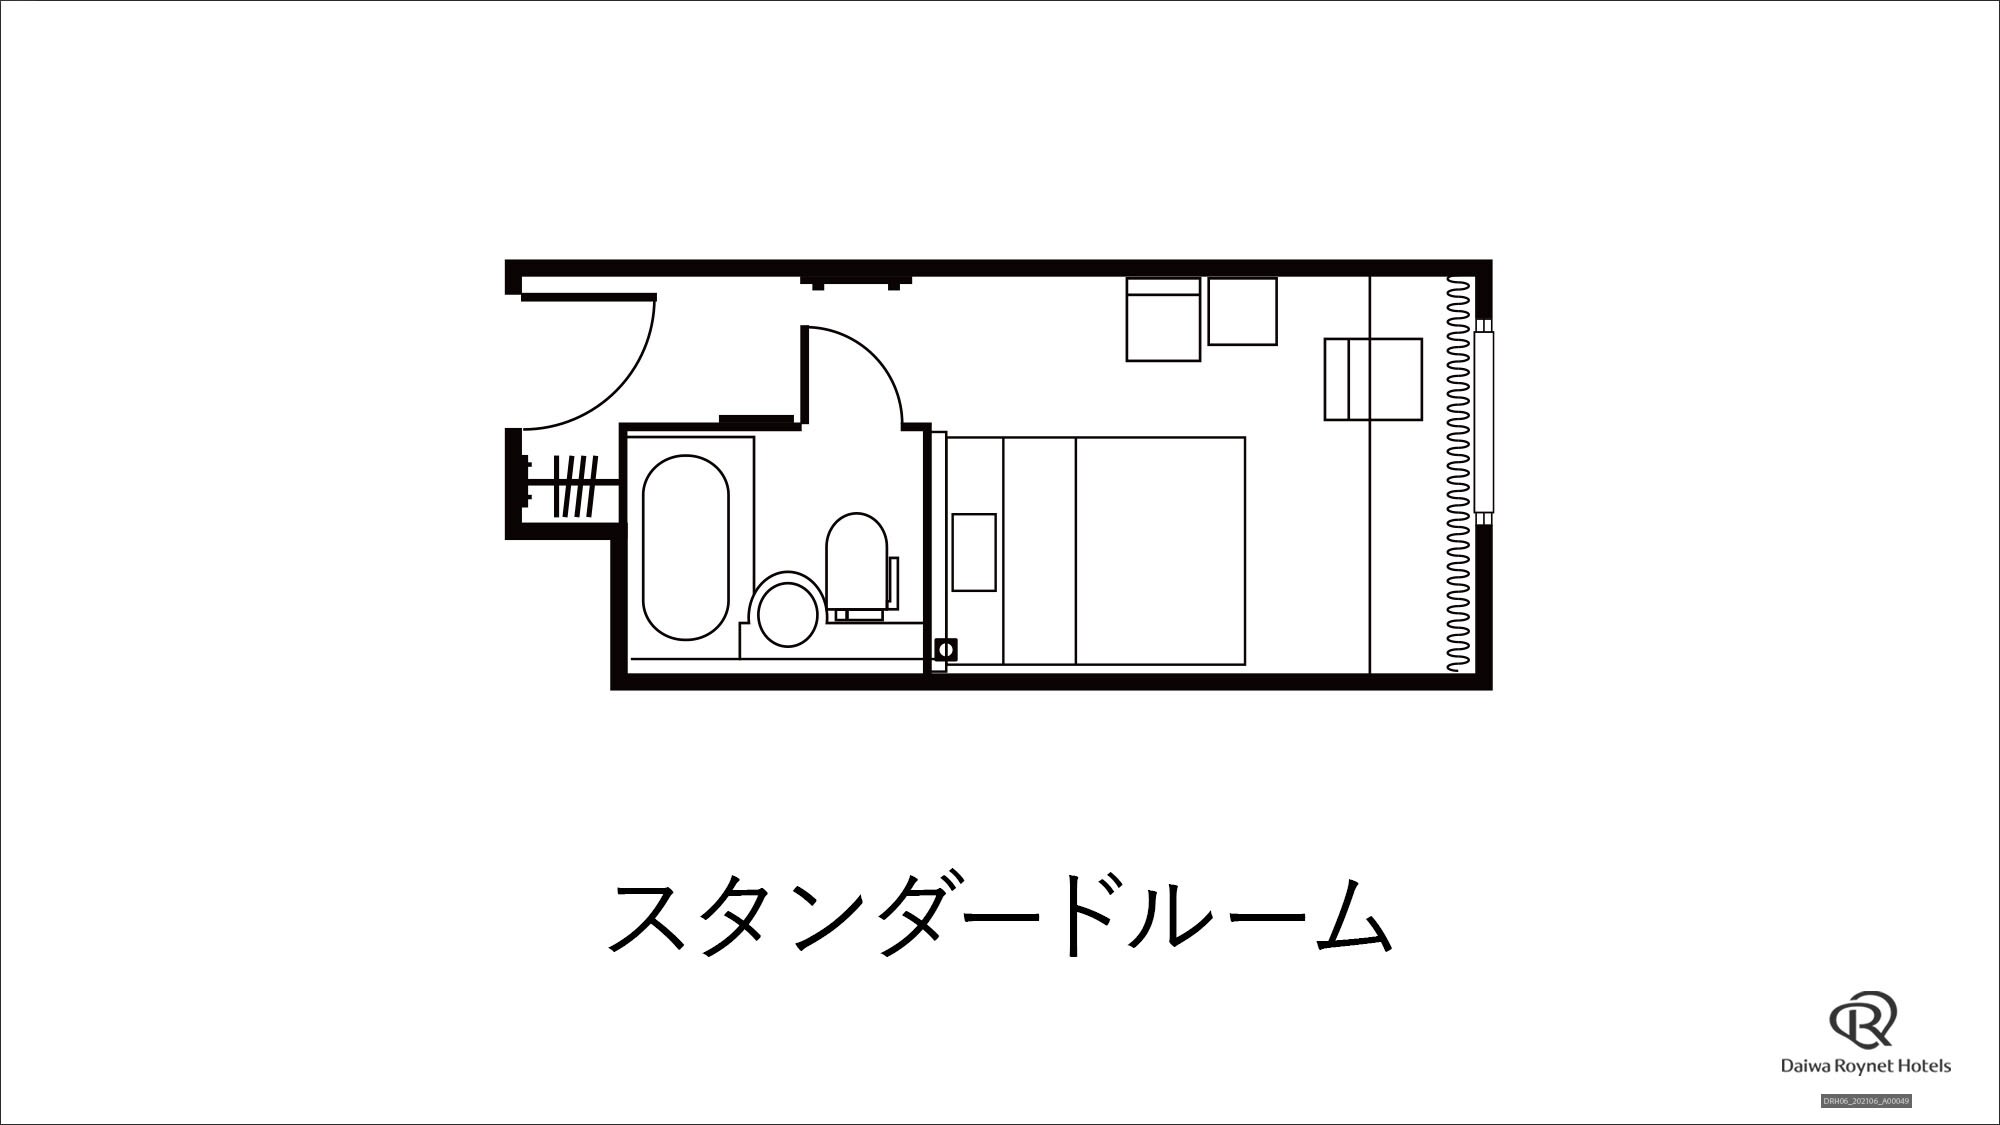 Standard room floor plan